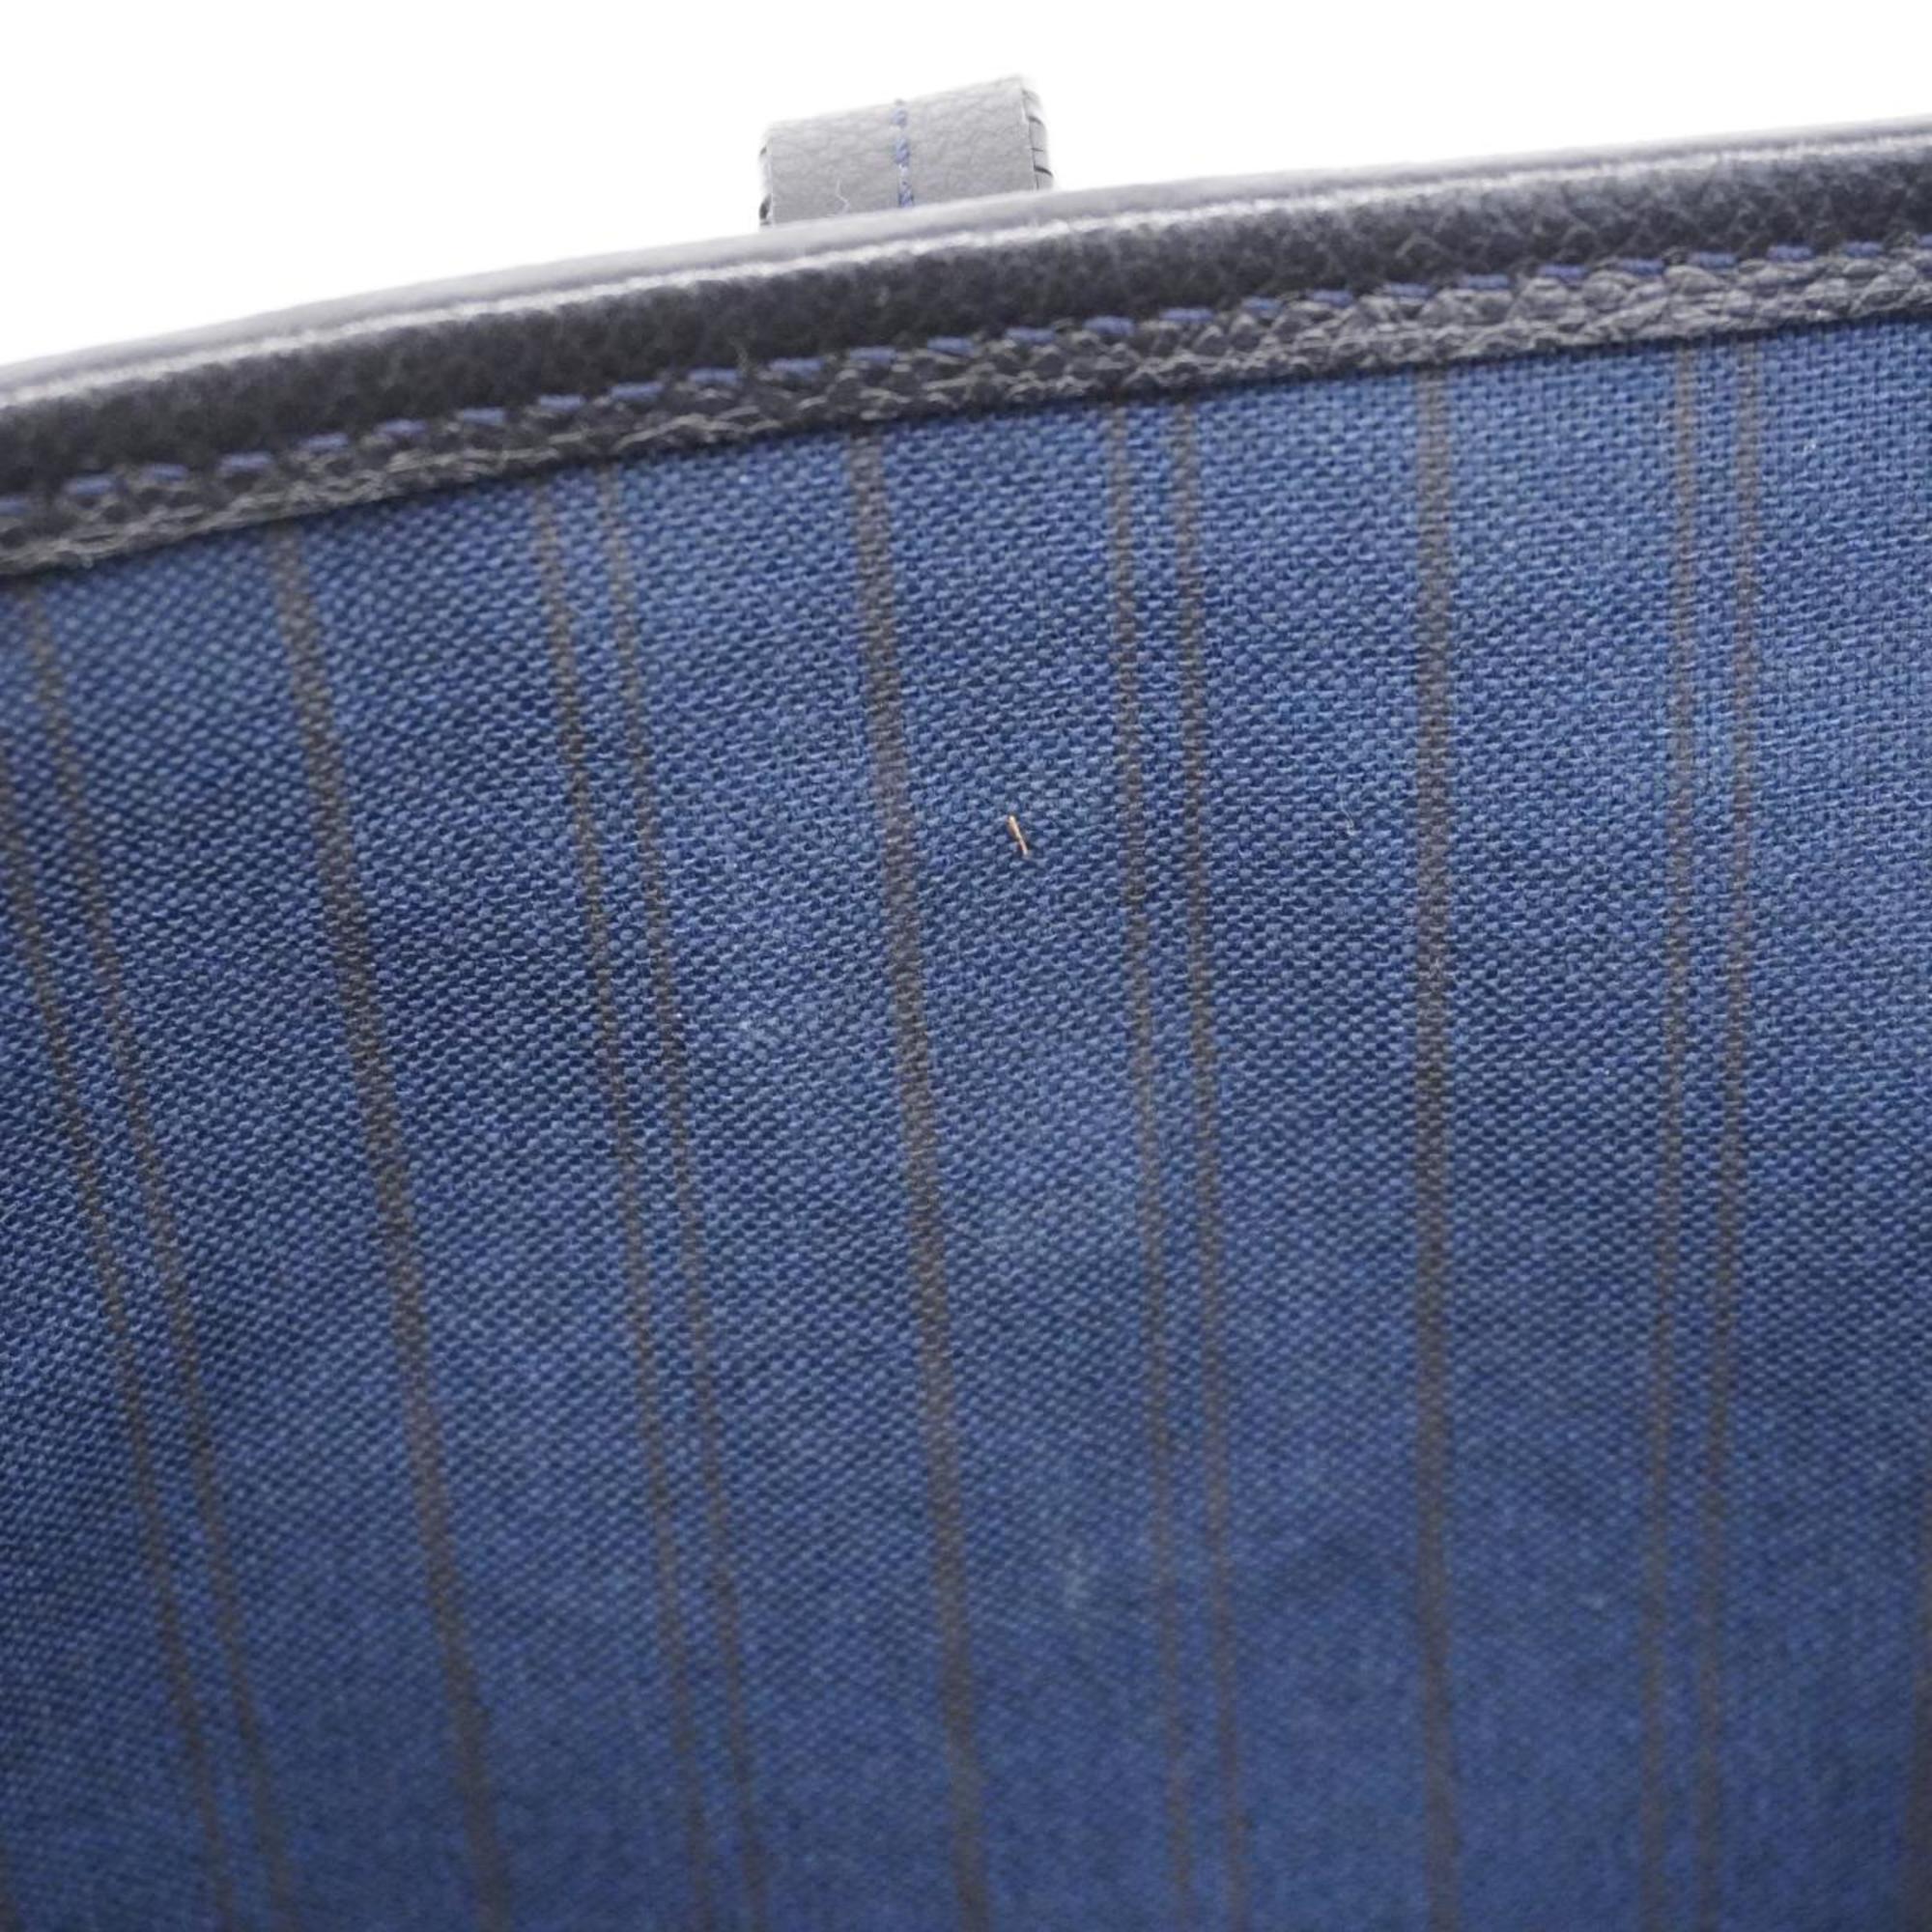 Louis Vuitton Tote Bag Monogram Empreinte Citadine PM M40517 Infini Ladies